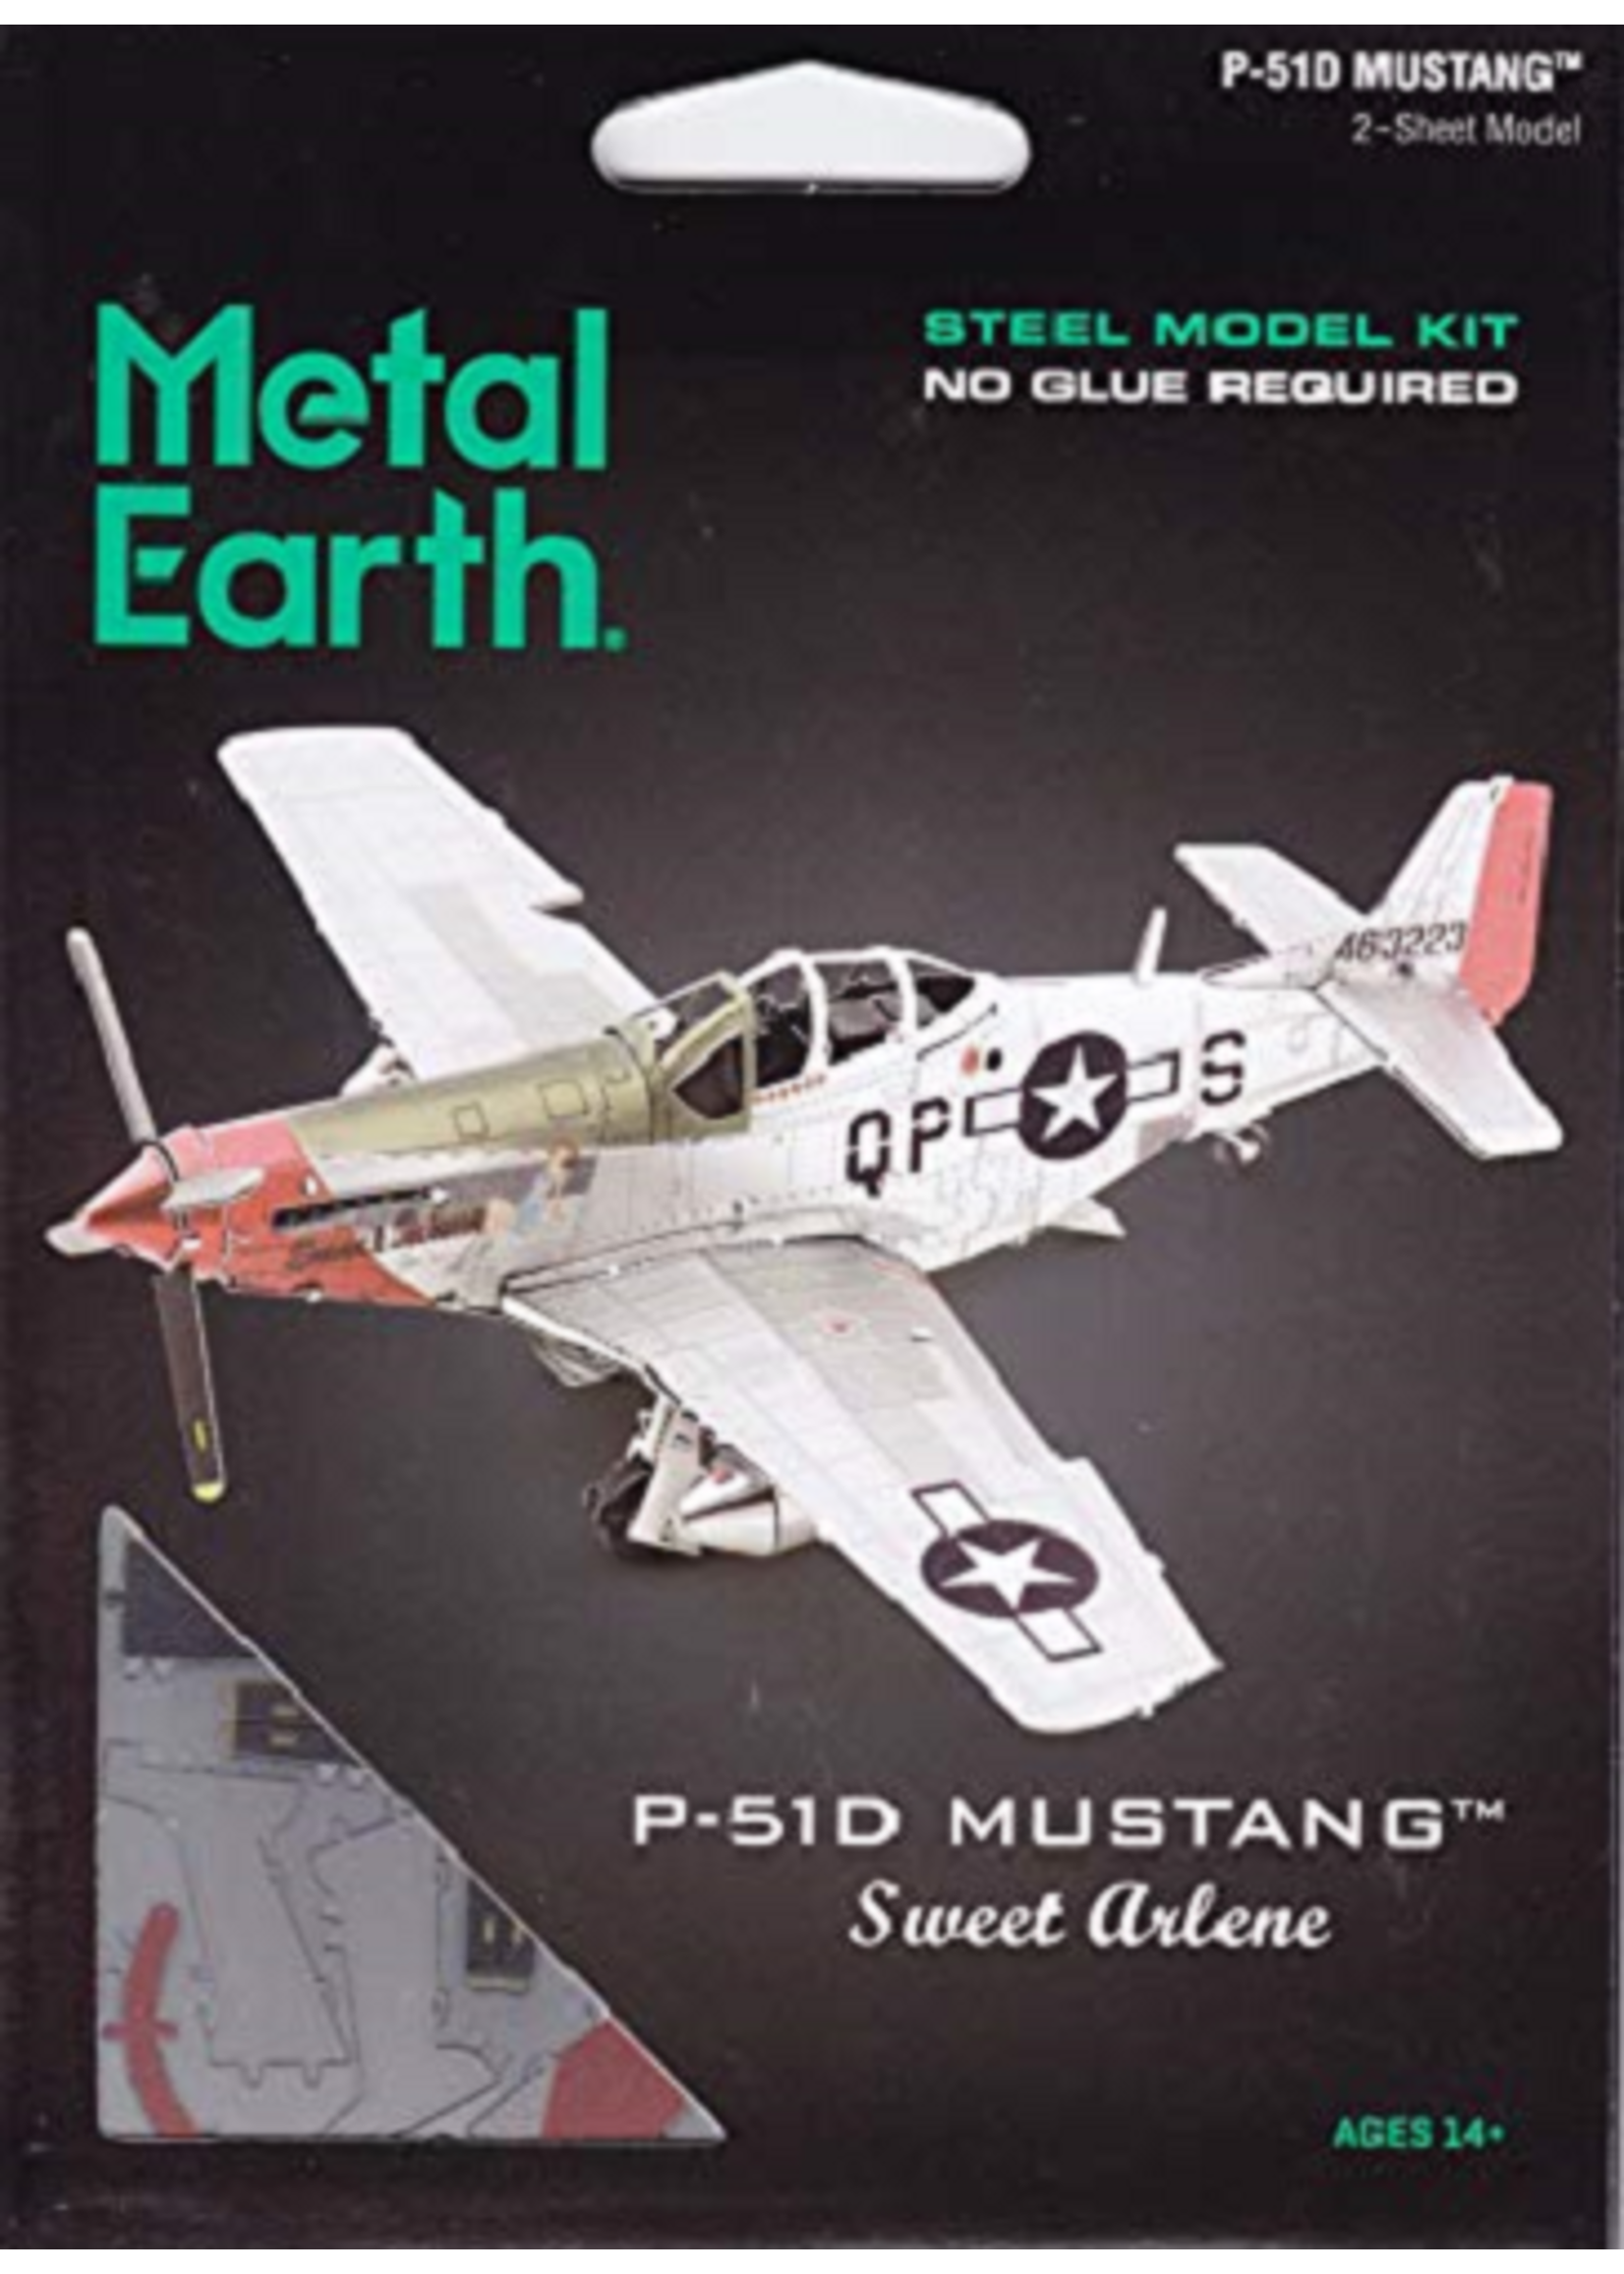 Metal Earth Metal Earth P-51 Sweet Arlene